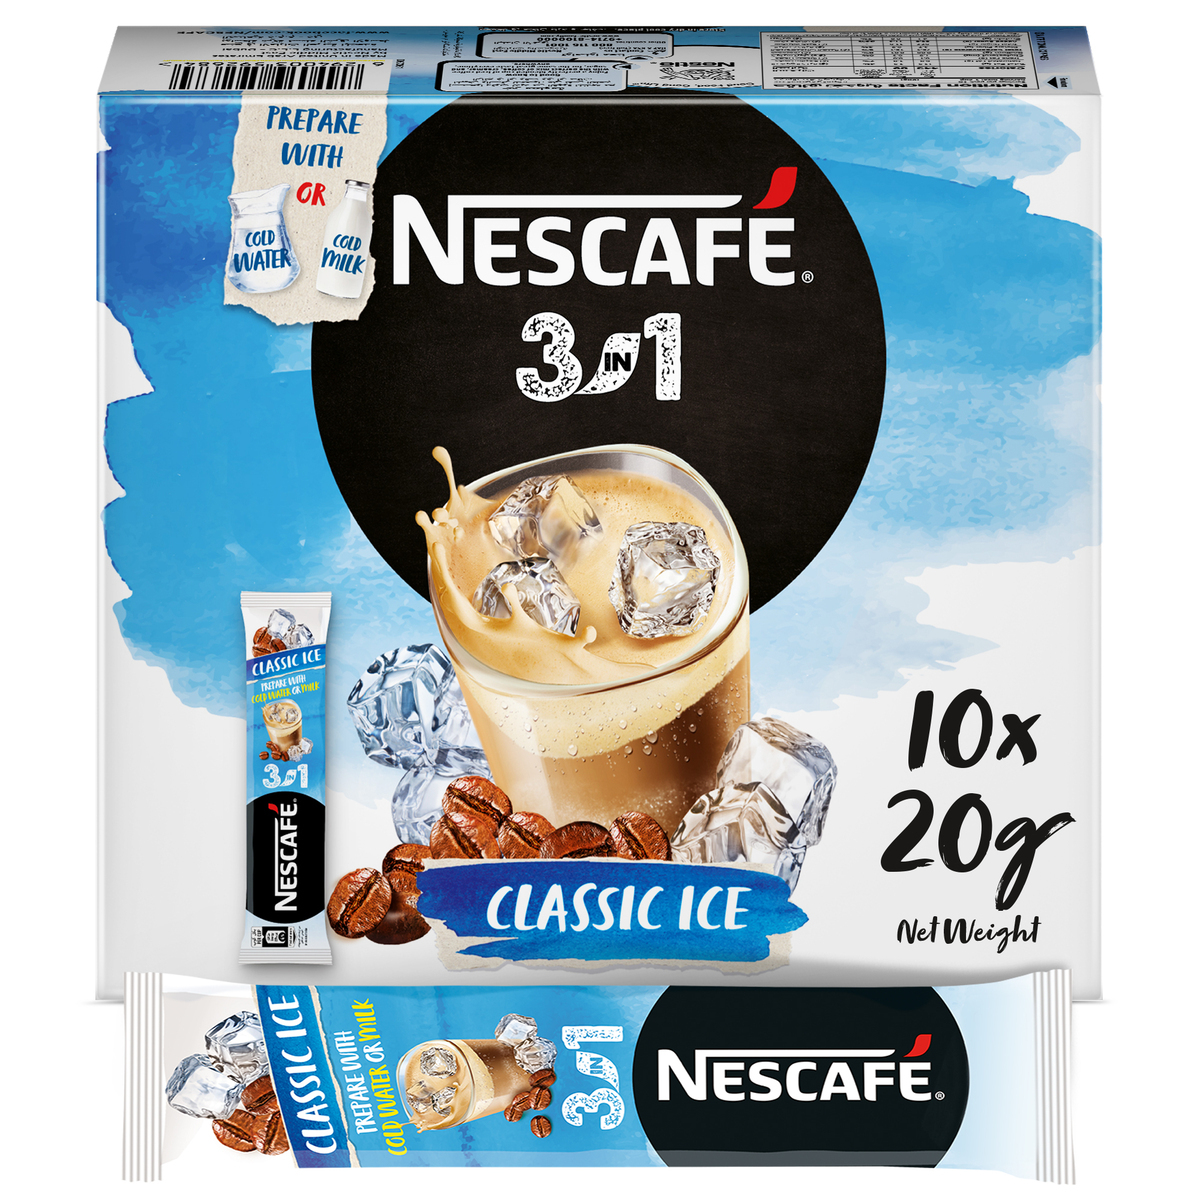 Discover Our NESCAFÉ 3in1 Classic Ice